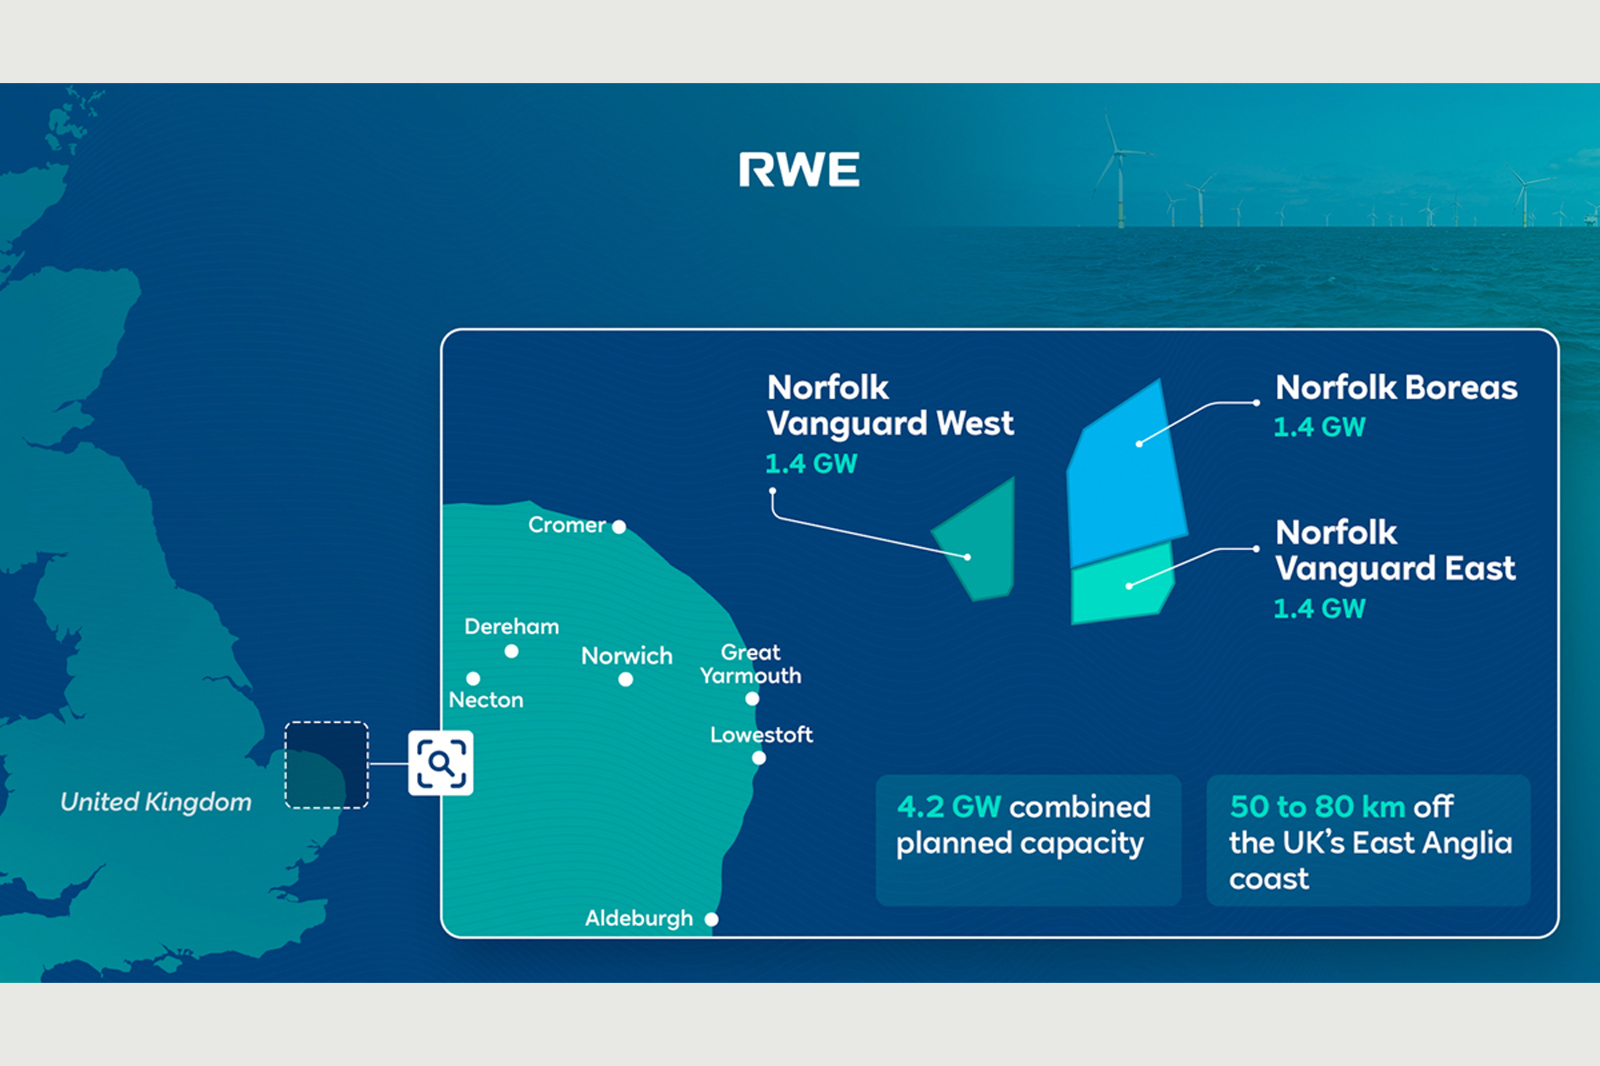 Τα τρία έργα υπερακτιων αιολικών που εξαγόρασε η RWE ©https://www.rwe.com/